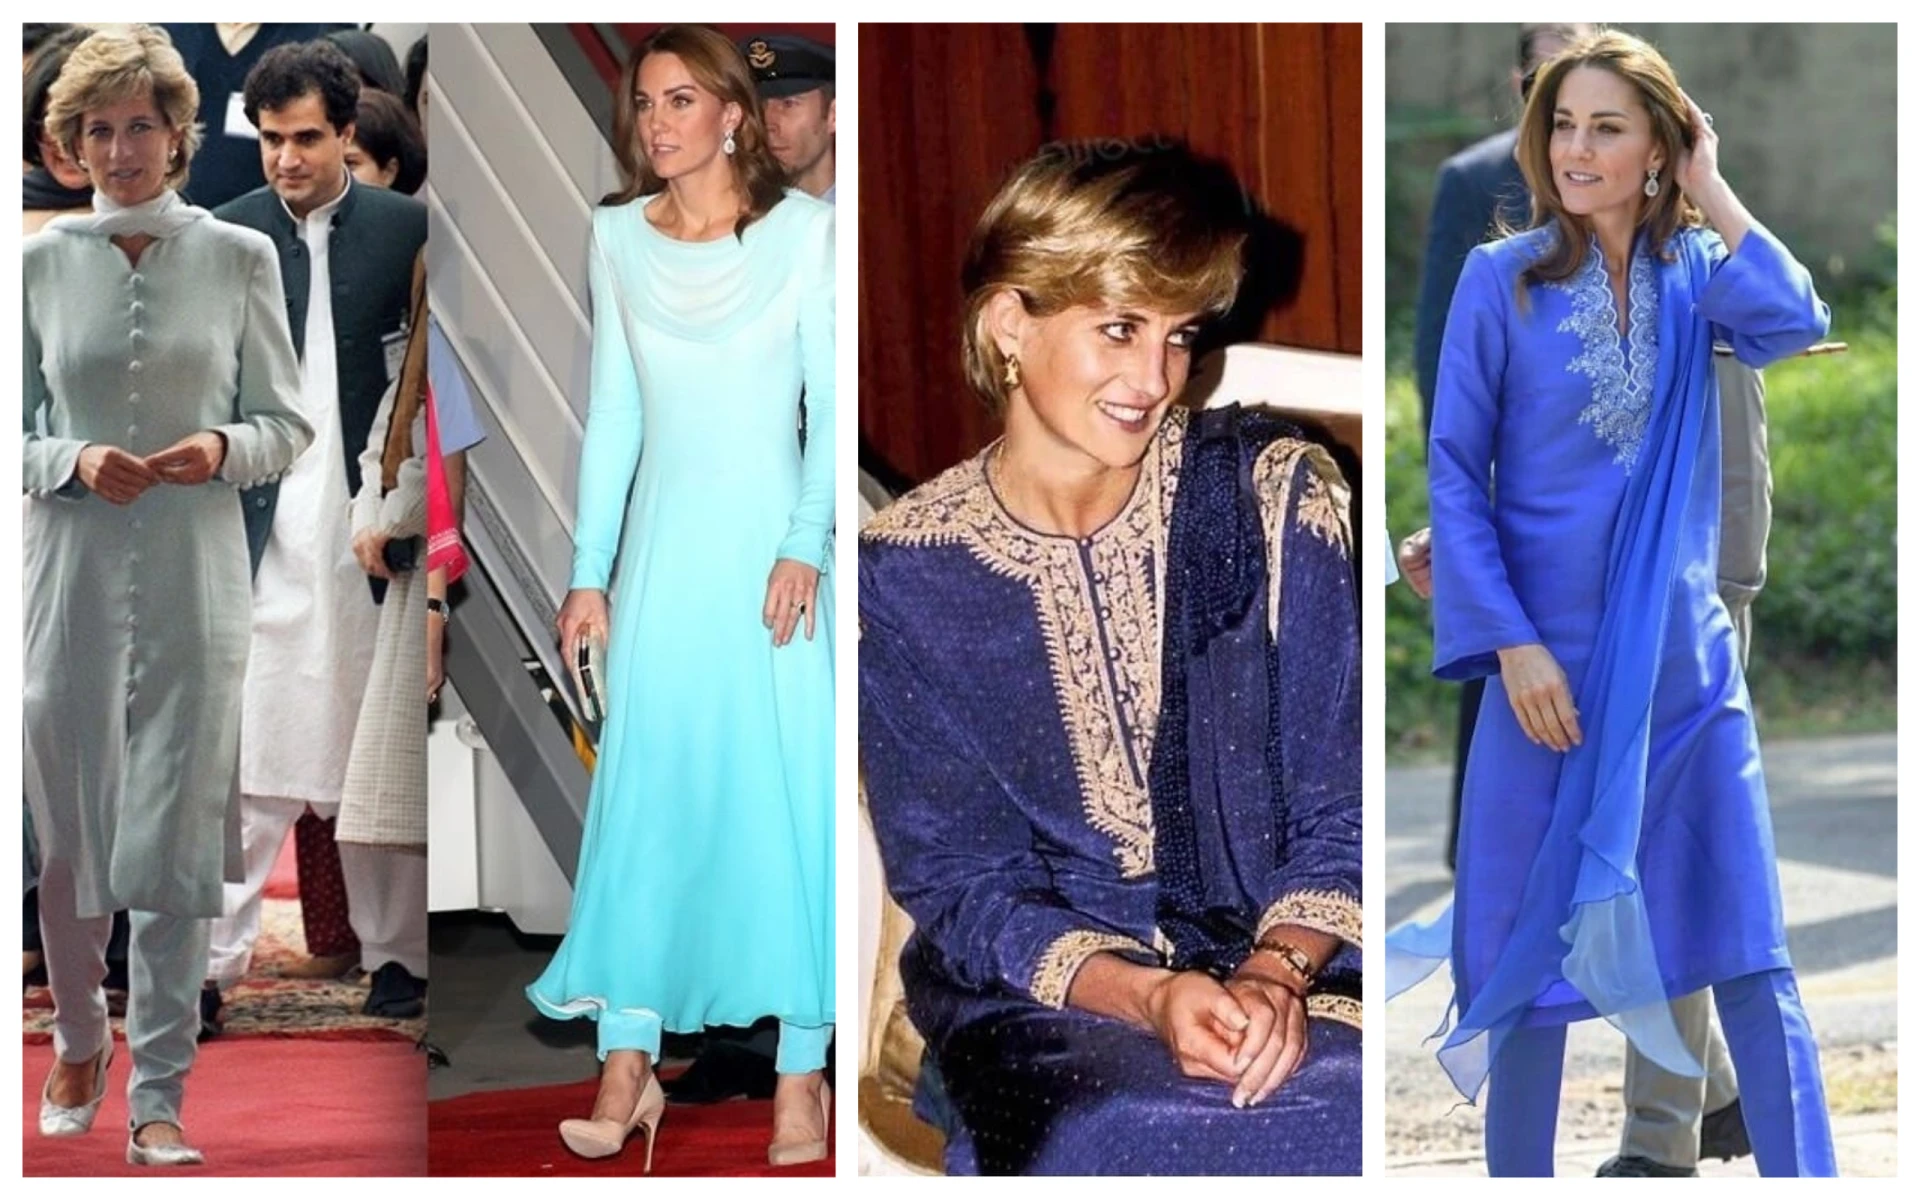  Кейт Мидълтън и принцеса Даяна споделят една и съща любов в модата - към точките